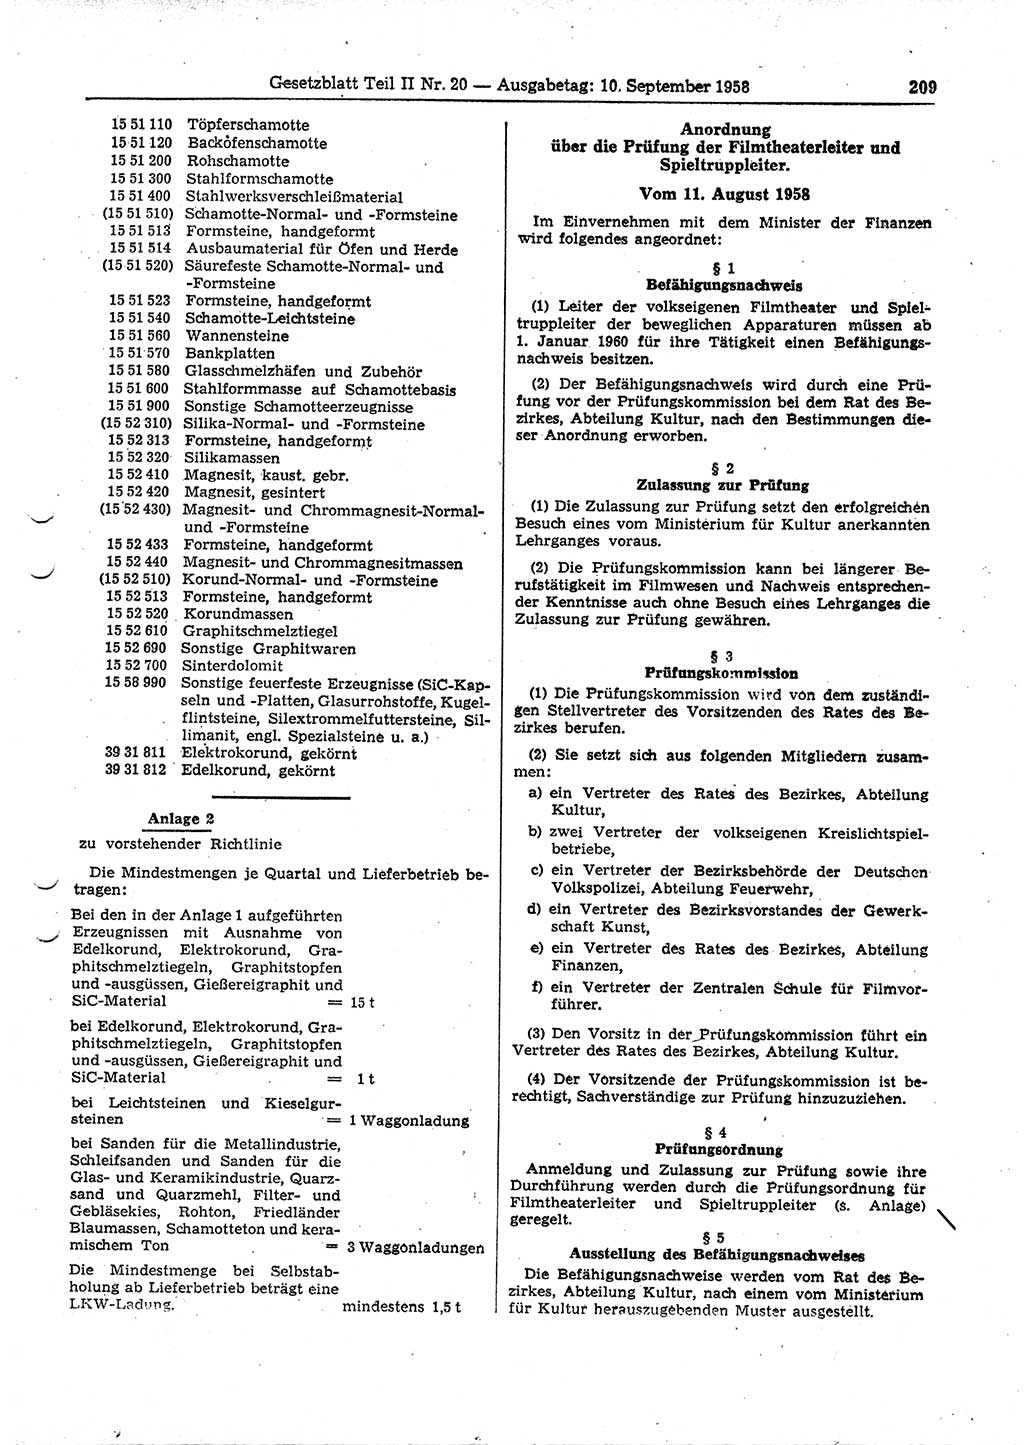 Gesetzblatt (GBl.) der Deutschen Demokratischen Republik (DDR) Teil ⅠⅠ 1958, Seite 209 (GBl. DDR ⅠⅠ 1958, S. 209)